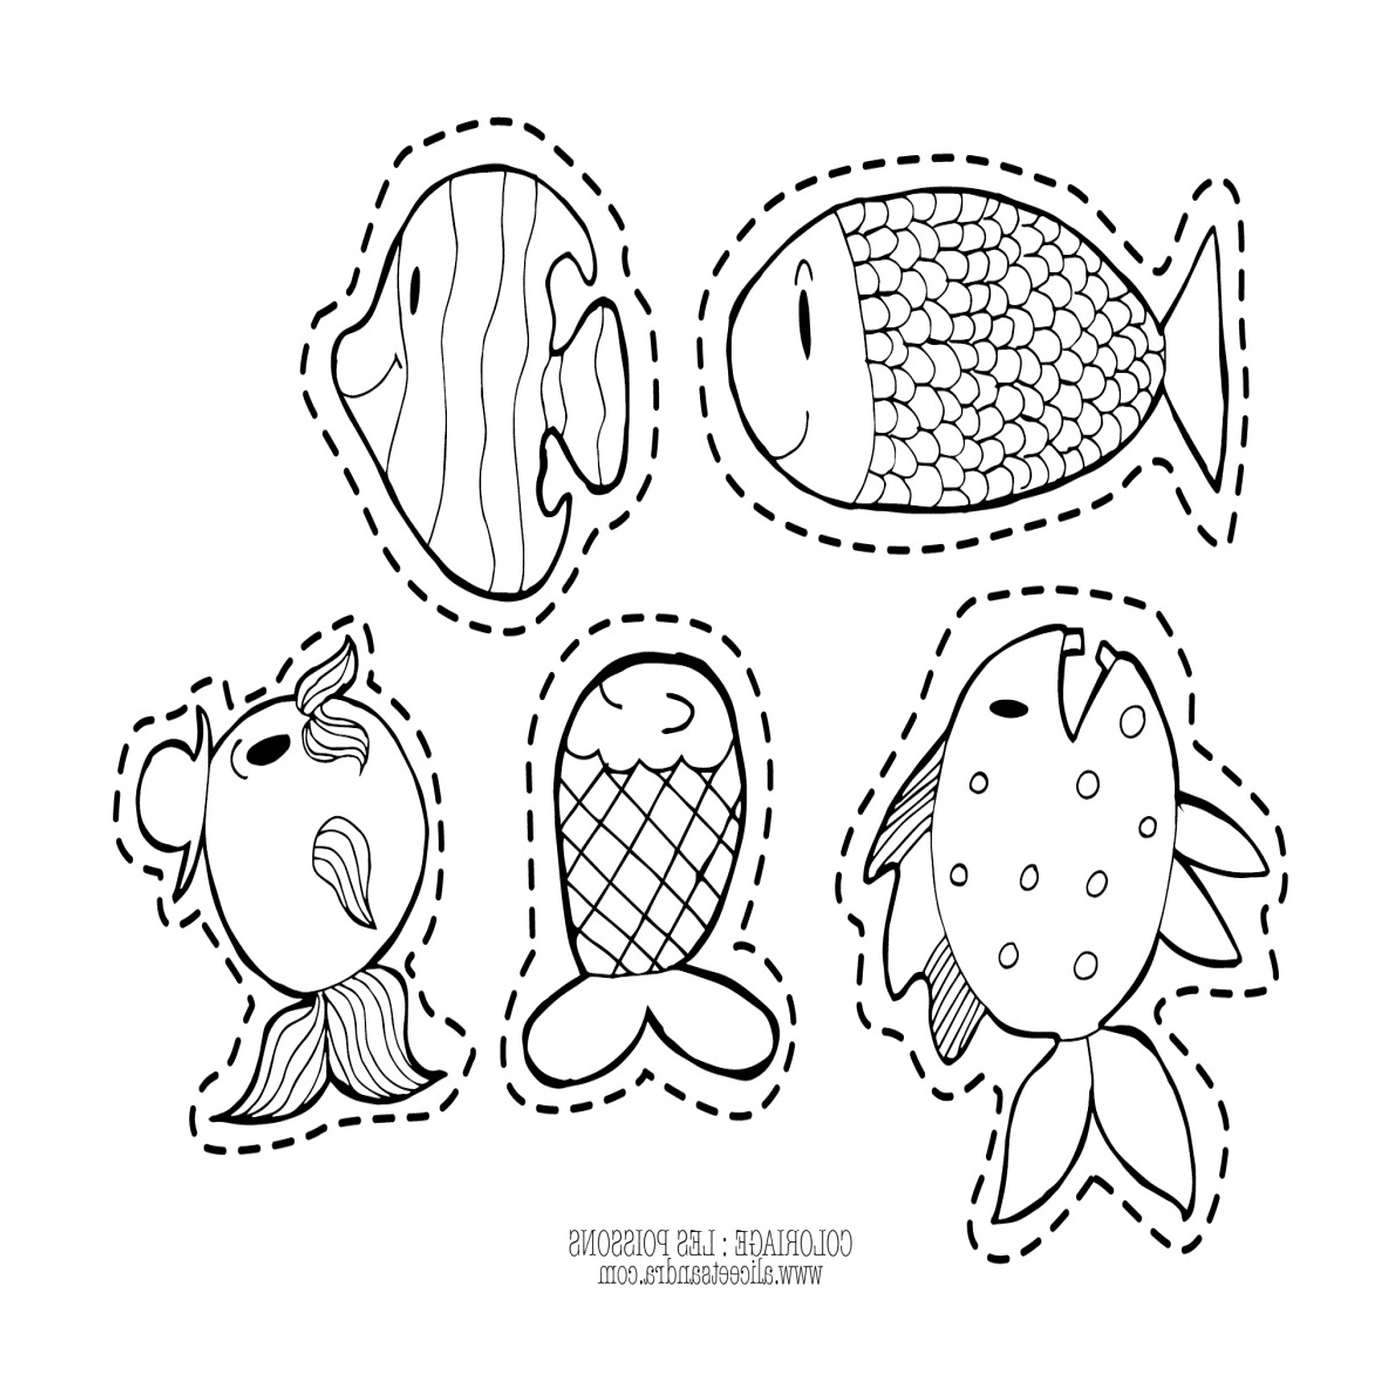  Fünf Fische auf einer Seite gezeichnet 